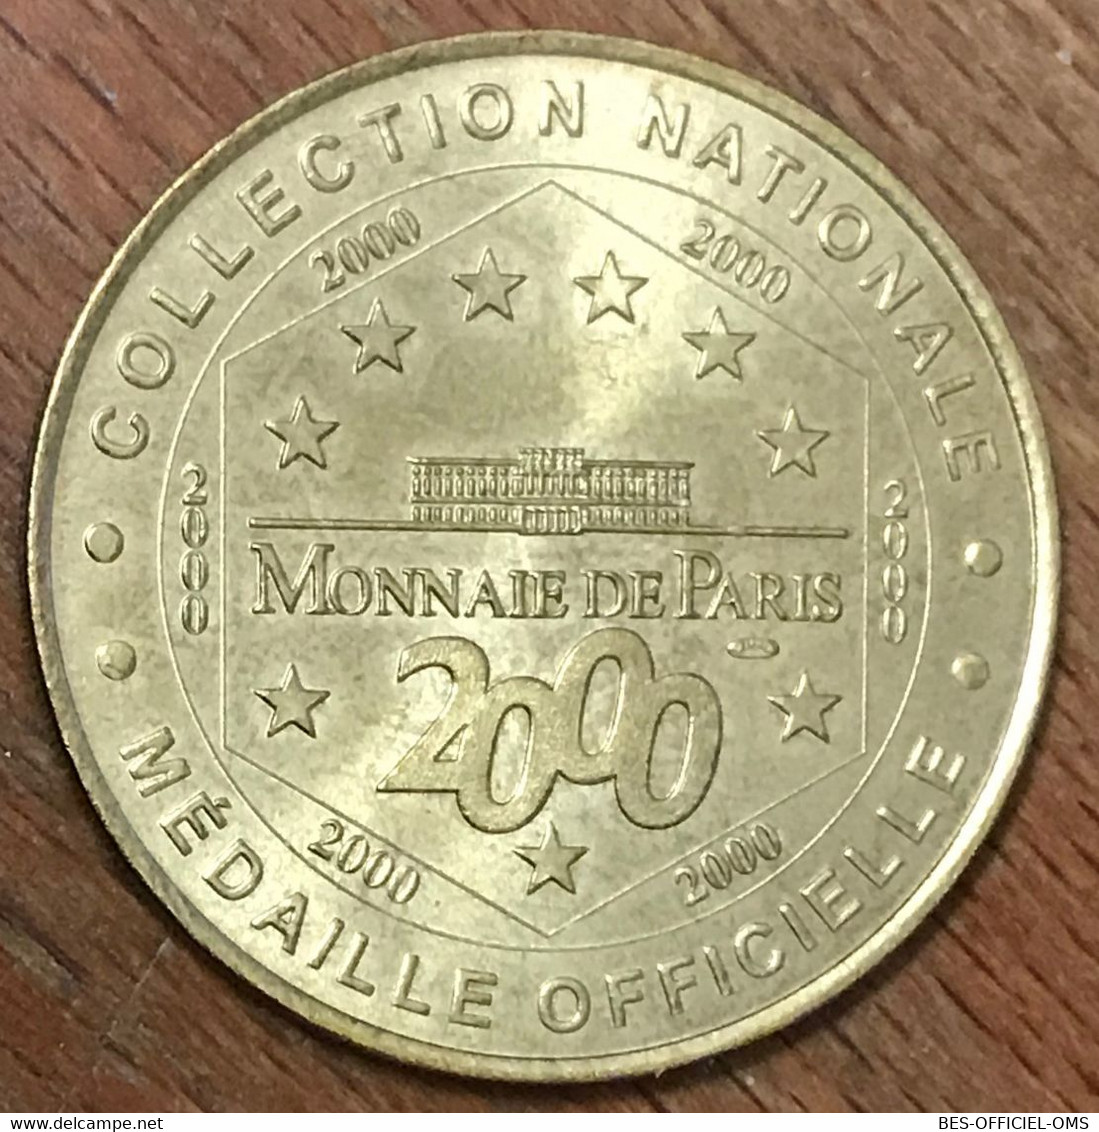 75007 LES EGOUTS DE PARIS MDP 2000 MÉDAILLE SOUVENIR MONNAIE DE PARIS JETON TOURISTIQUE MEDALS COINS TOKENS - 2000